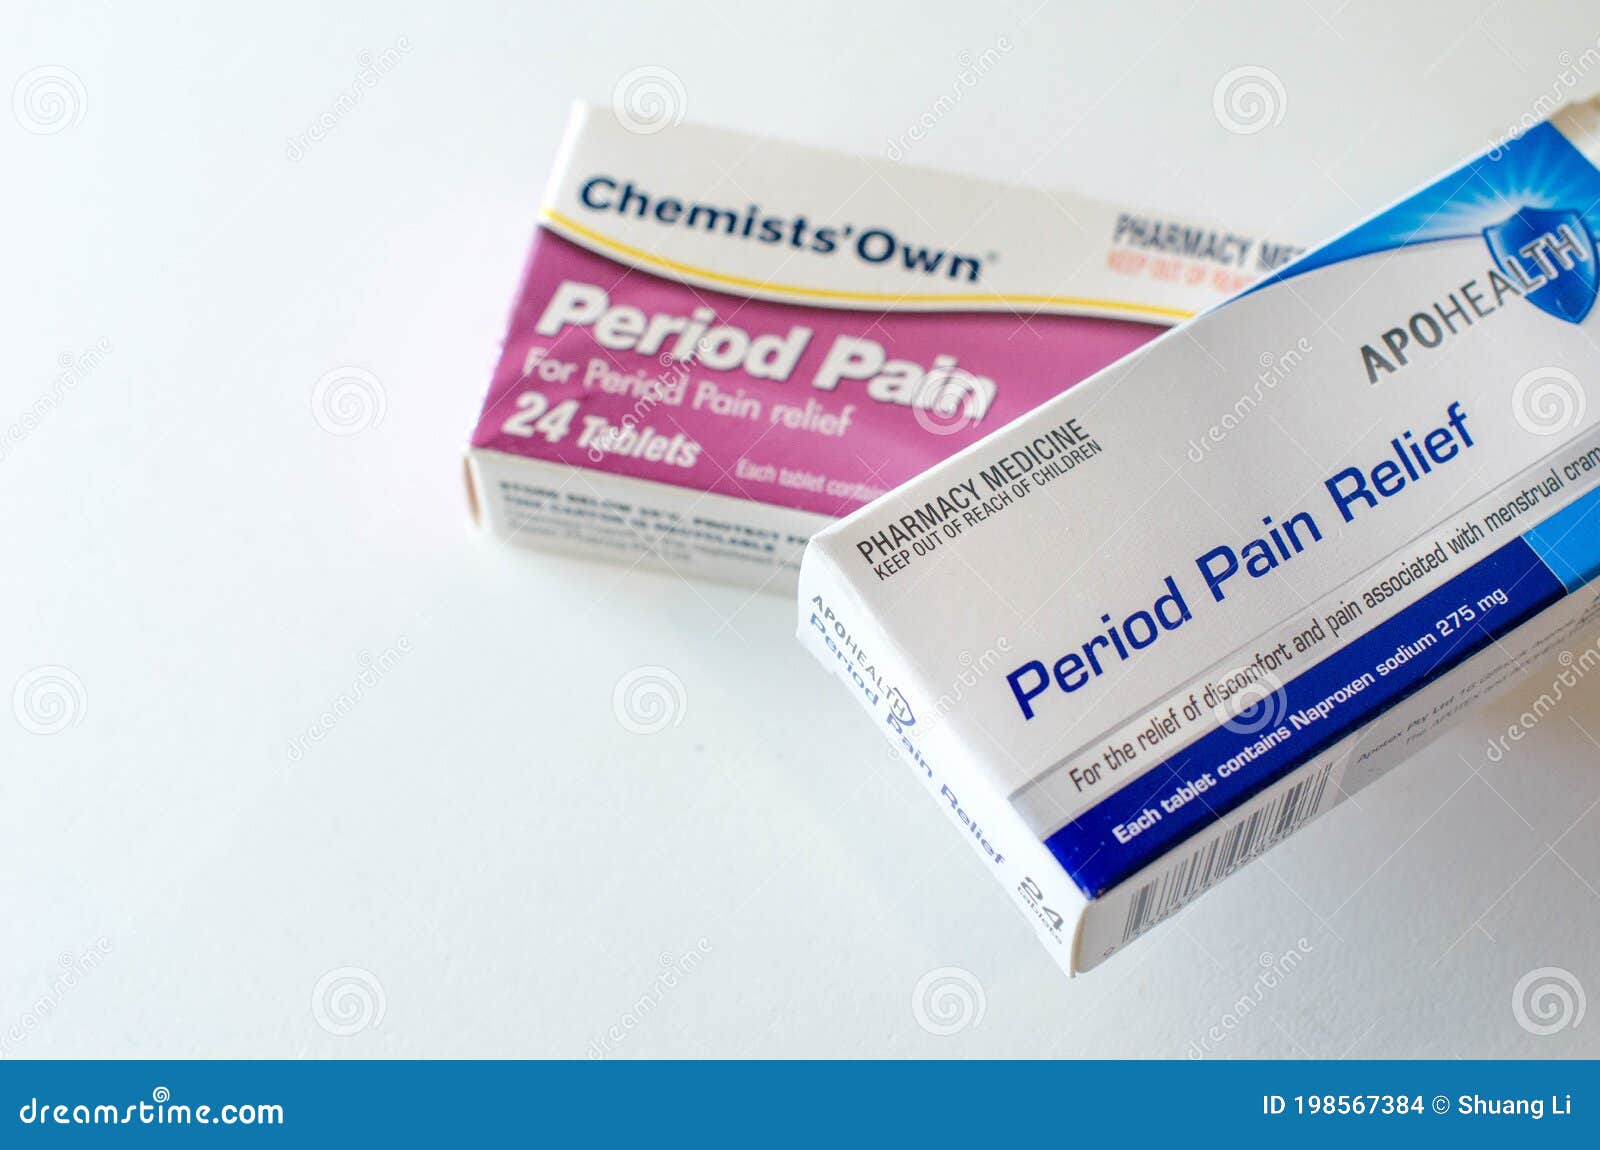 APOHEALTH Period Pain Relief - Apohealth